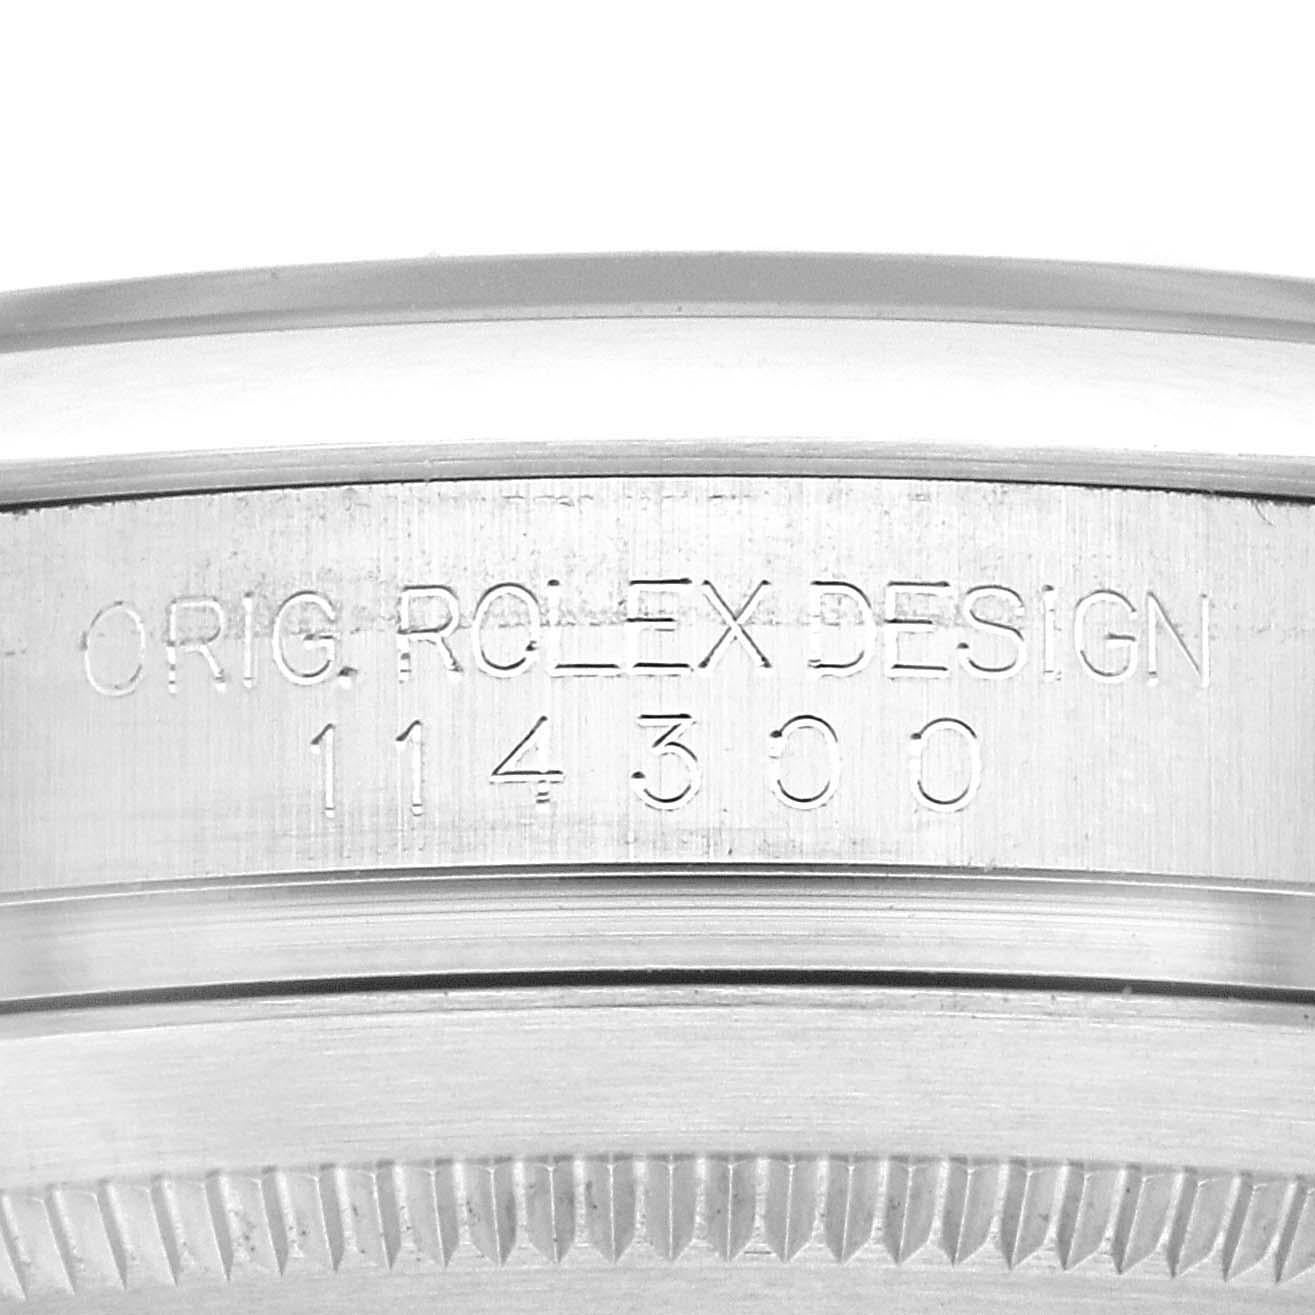 Rolex Oyster Perpetual 39 Schwarzes Zifferblatt Stahl Herrenuhr 114300 Box Card. Offiziell zertifiziertes Chronometerwerk mit automatischem Aufzug. Gehäuse aus Edelstahl mit einem Durchmesser von 39.0 mm. Rolex Logo auf einer Krone. Glatte, gewölbte